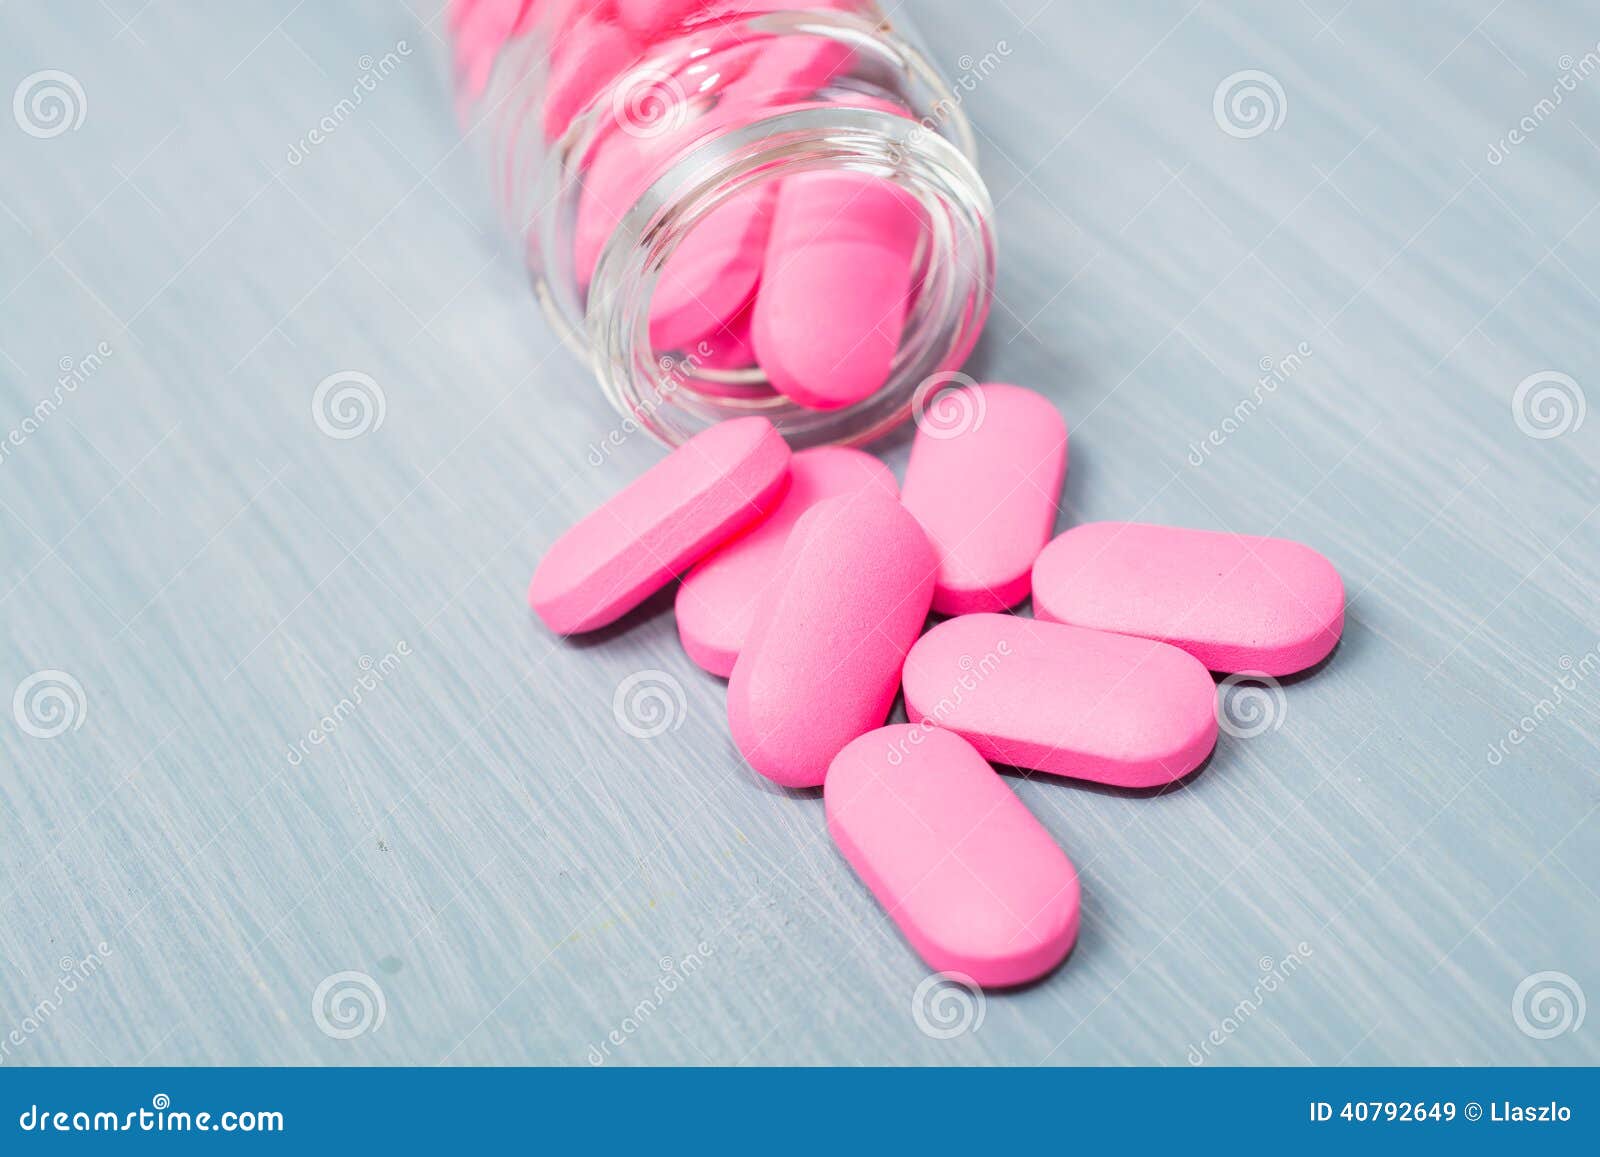 25 pink pill